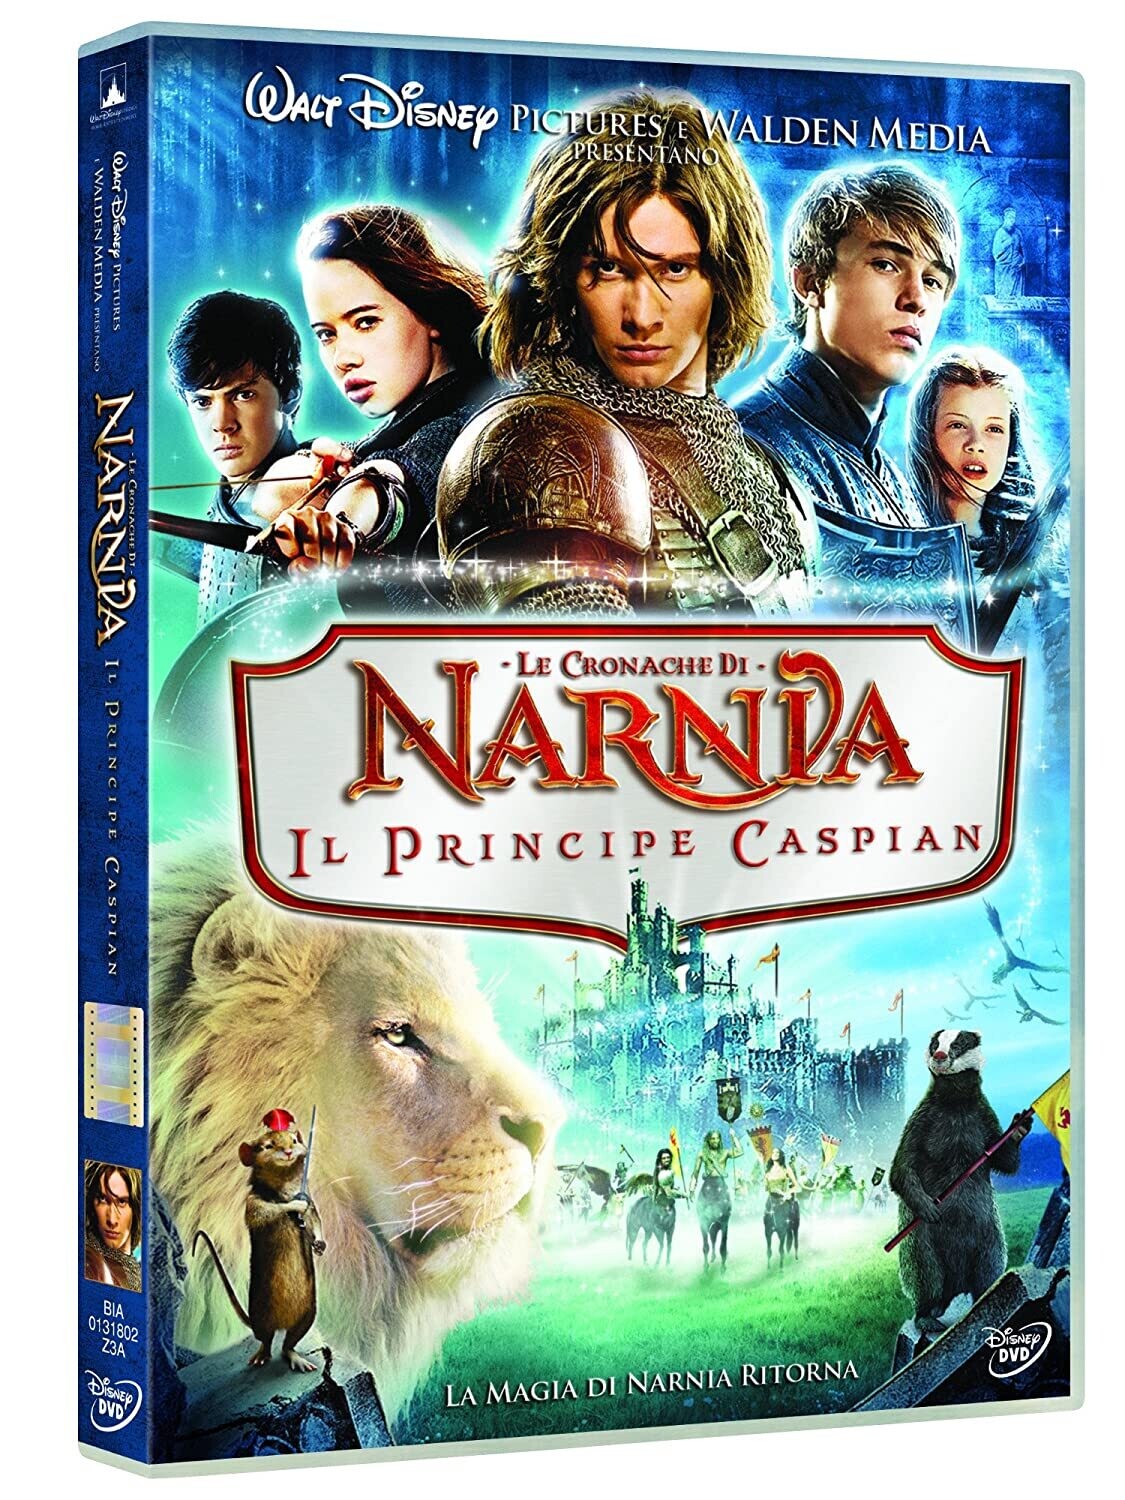 Le cronache di Narnia - Il principe Caspian DVD